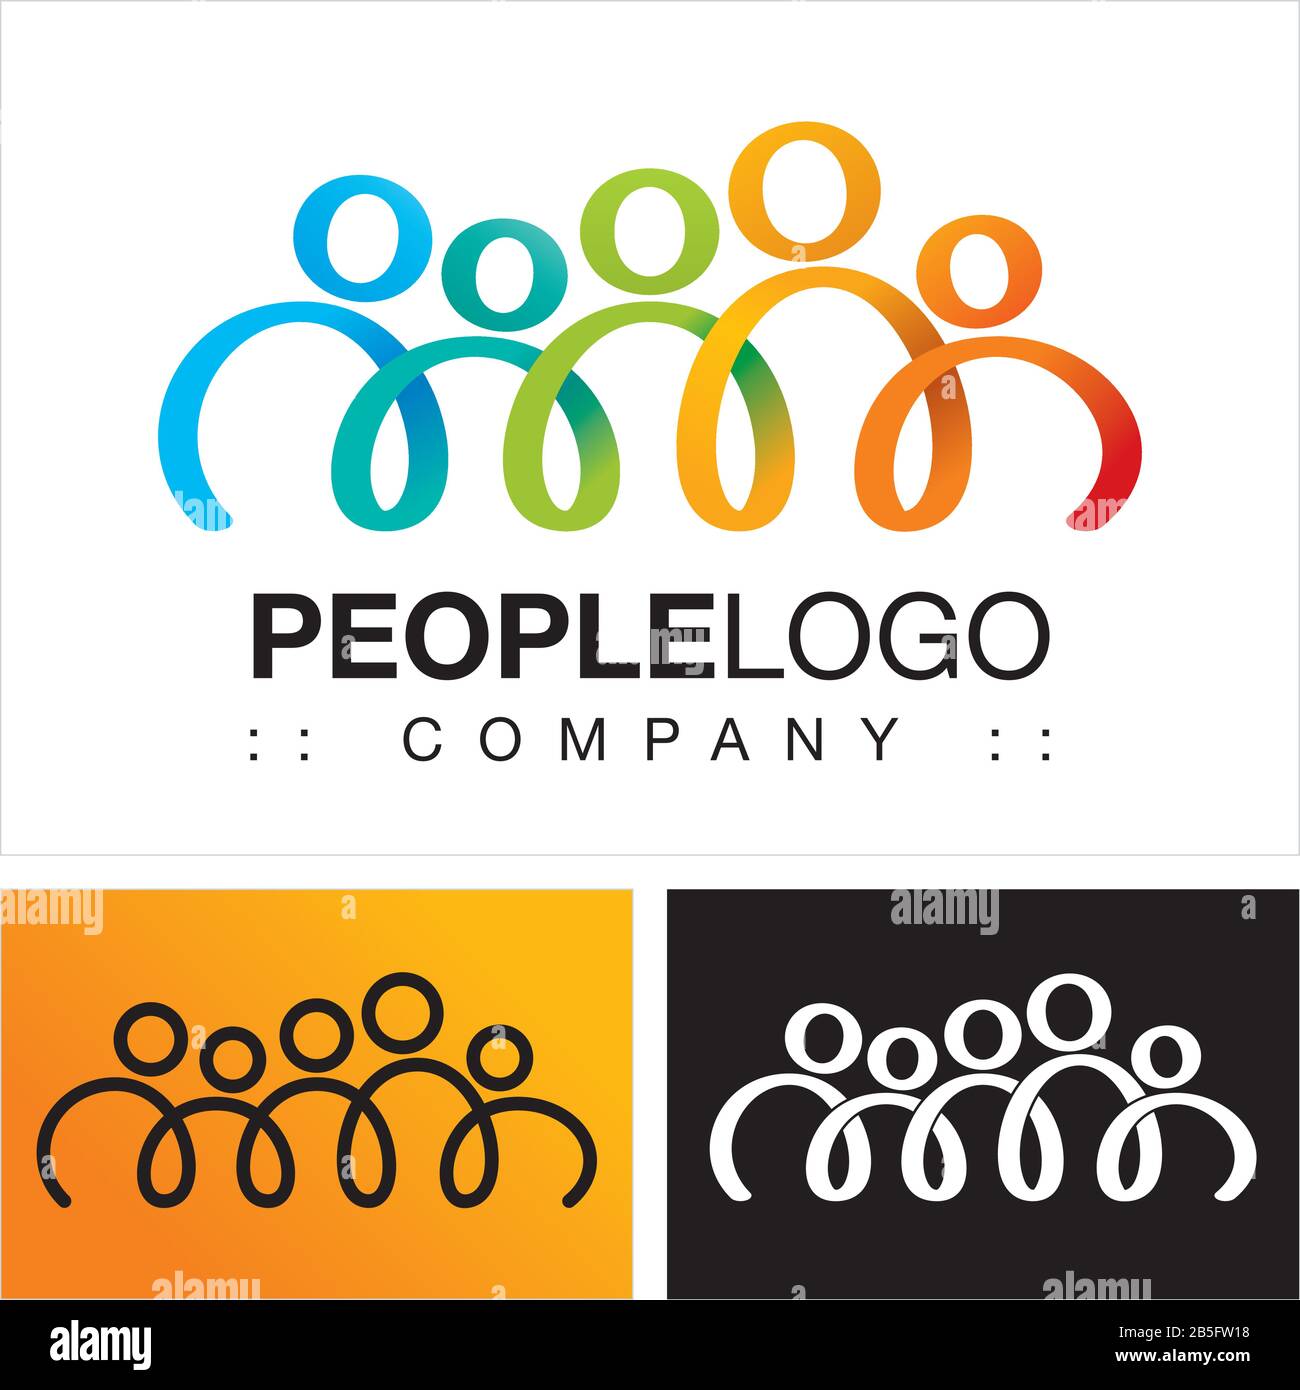 Personen (Familie, Freunde, Team, Gruppe) Vector Symbol Company (Association) Logo (Logotyp). Spirale, Hände Zusammen, Farbige Symbole. Stock Vektor